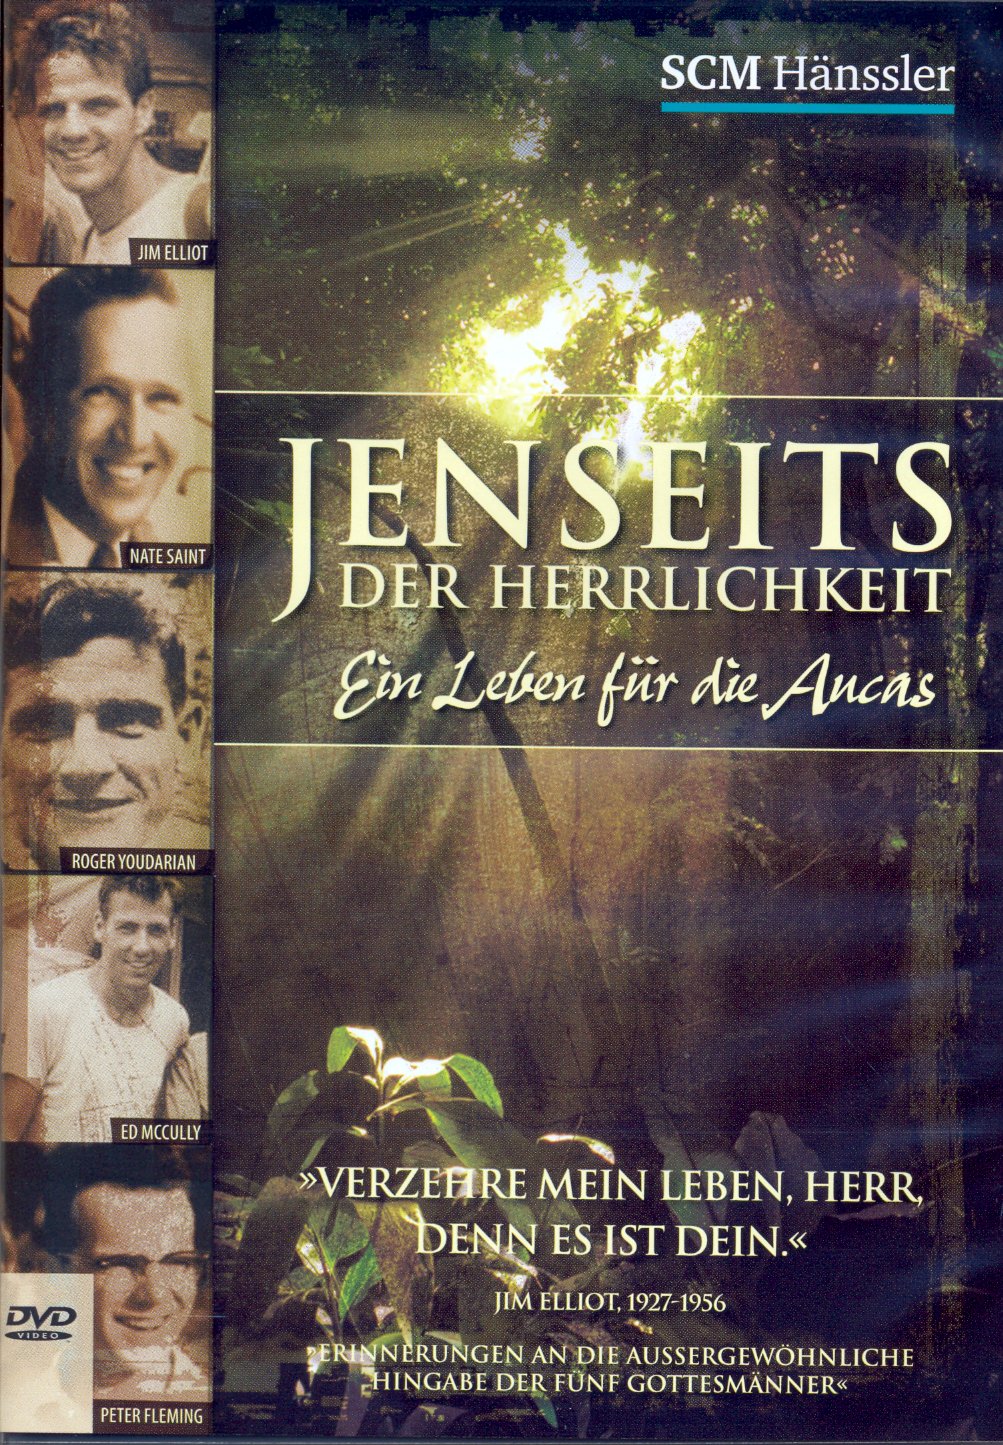 JENSEITS DER HERRLICHKEIT DVD - EIN LEBEN FÜR DIE AUCAS